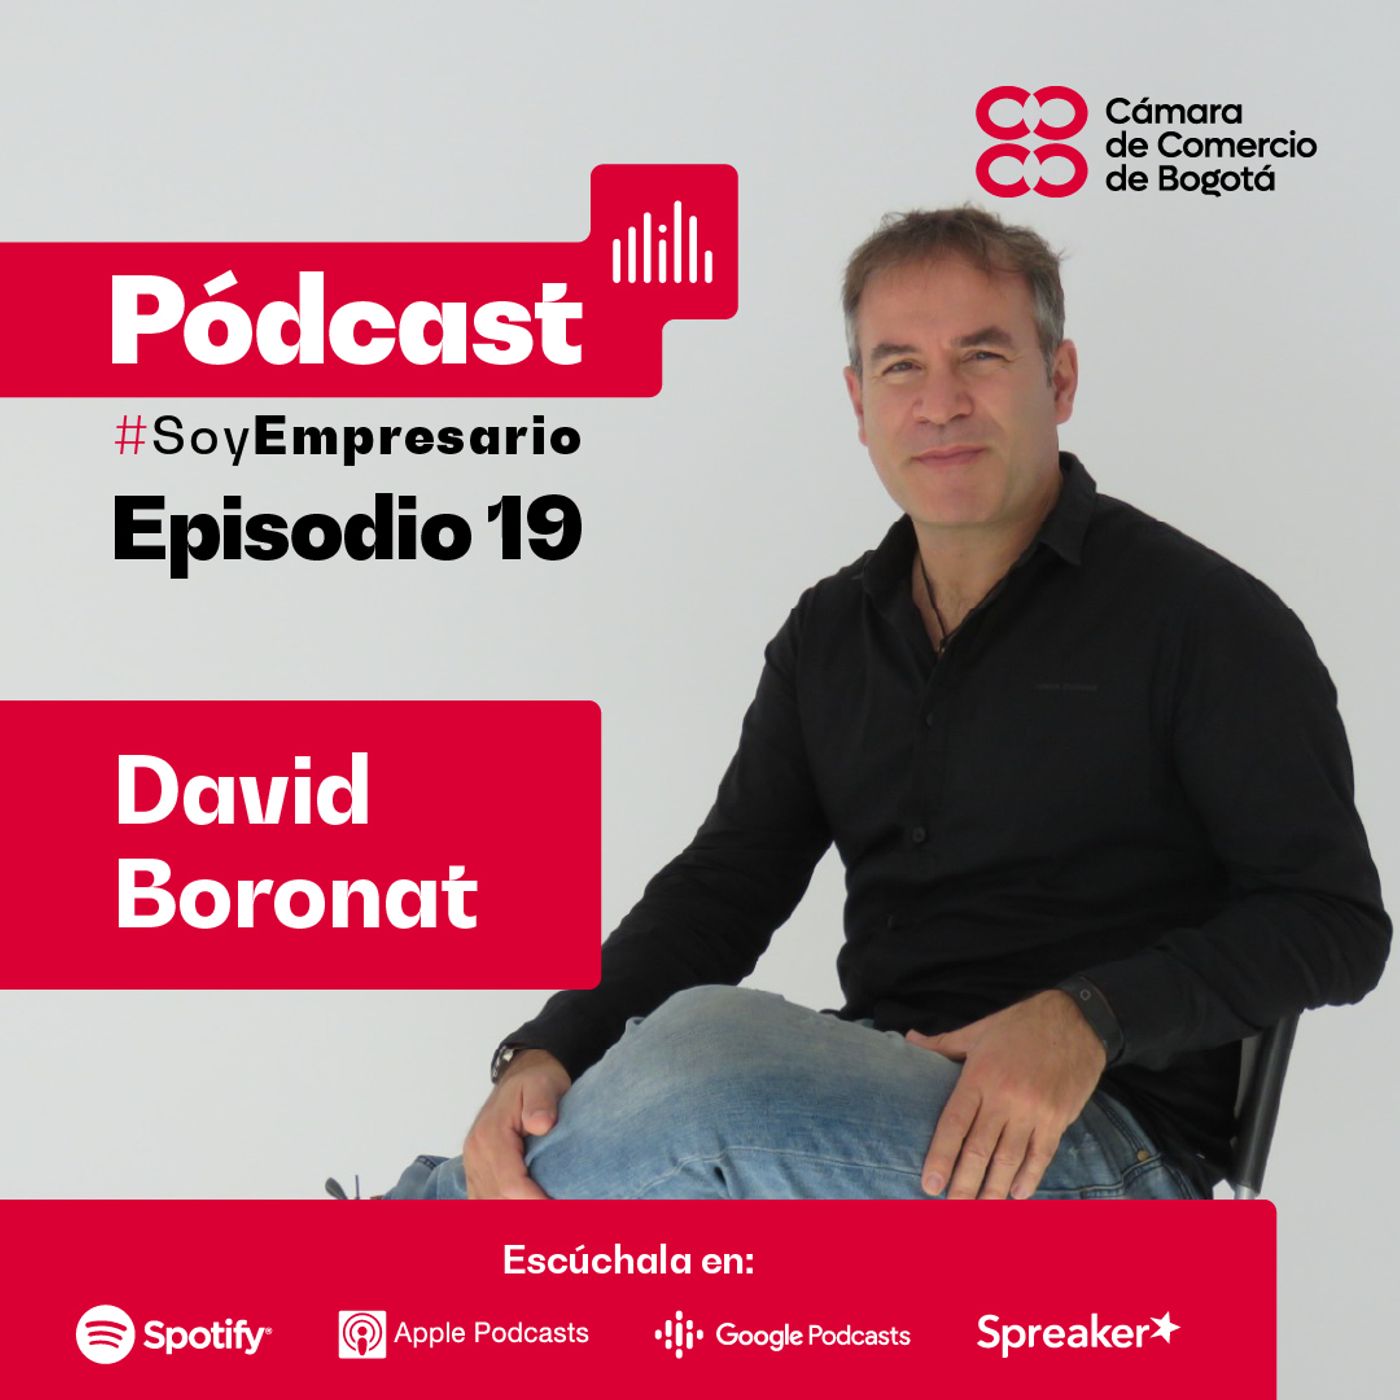 Ep. 19 David Boronat, fundador de Multiplica, nos habla sobre experiencias digitales